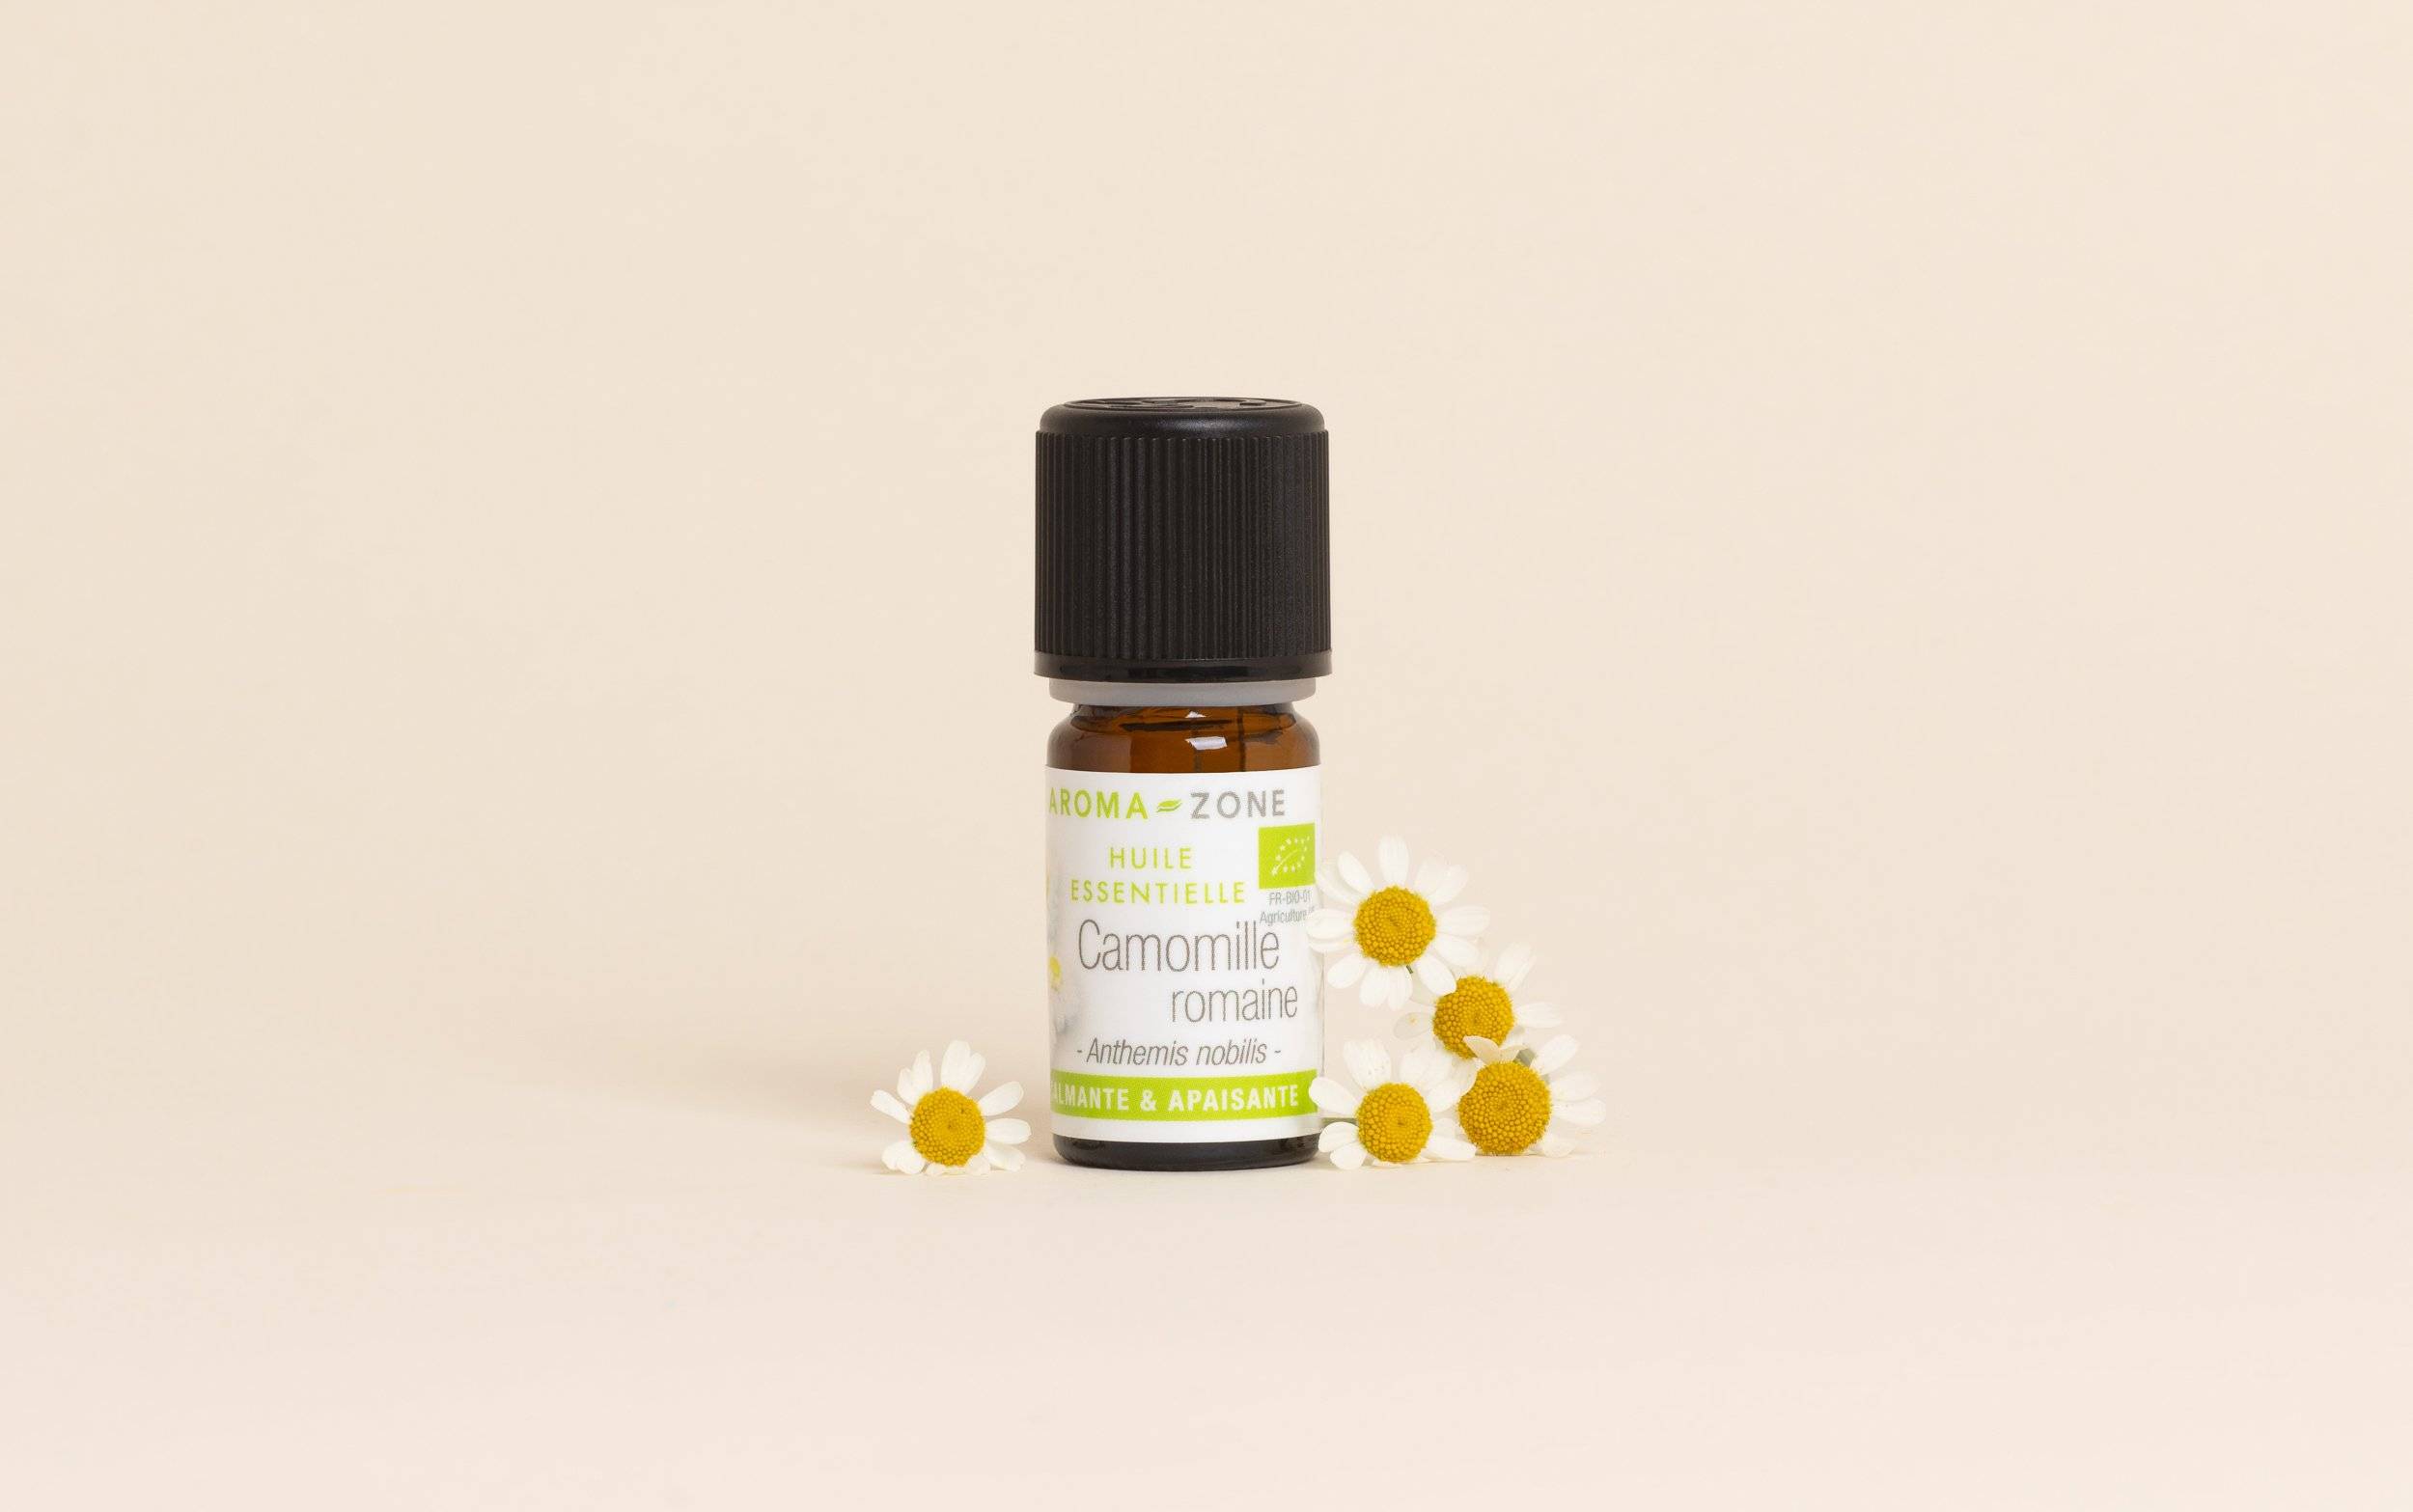 Roll-on aux huiles essentielles - maux de tête - migraine - Aroma-Zone